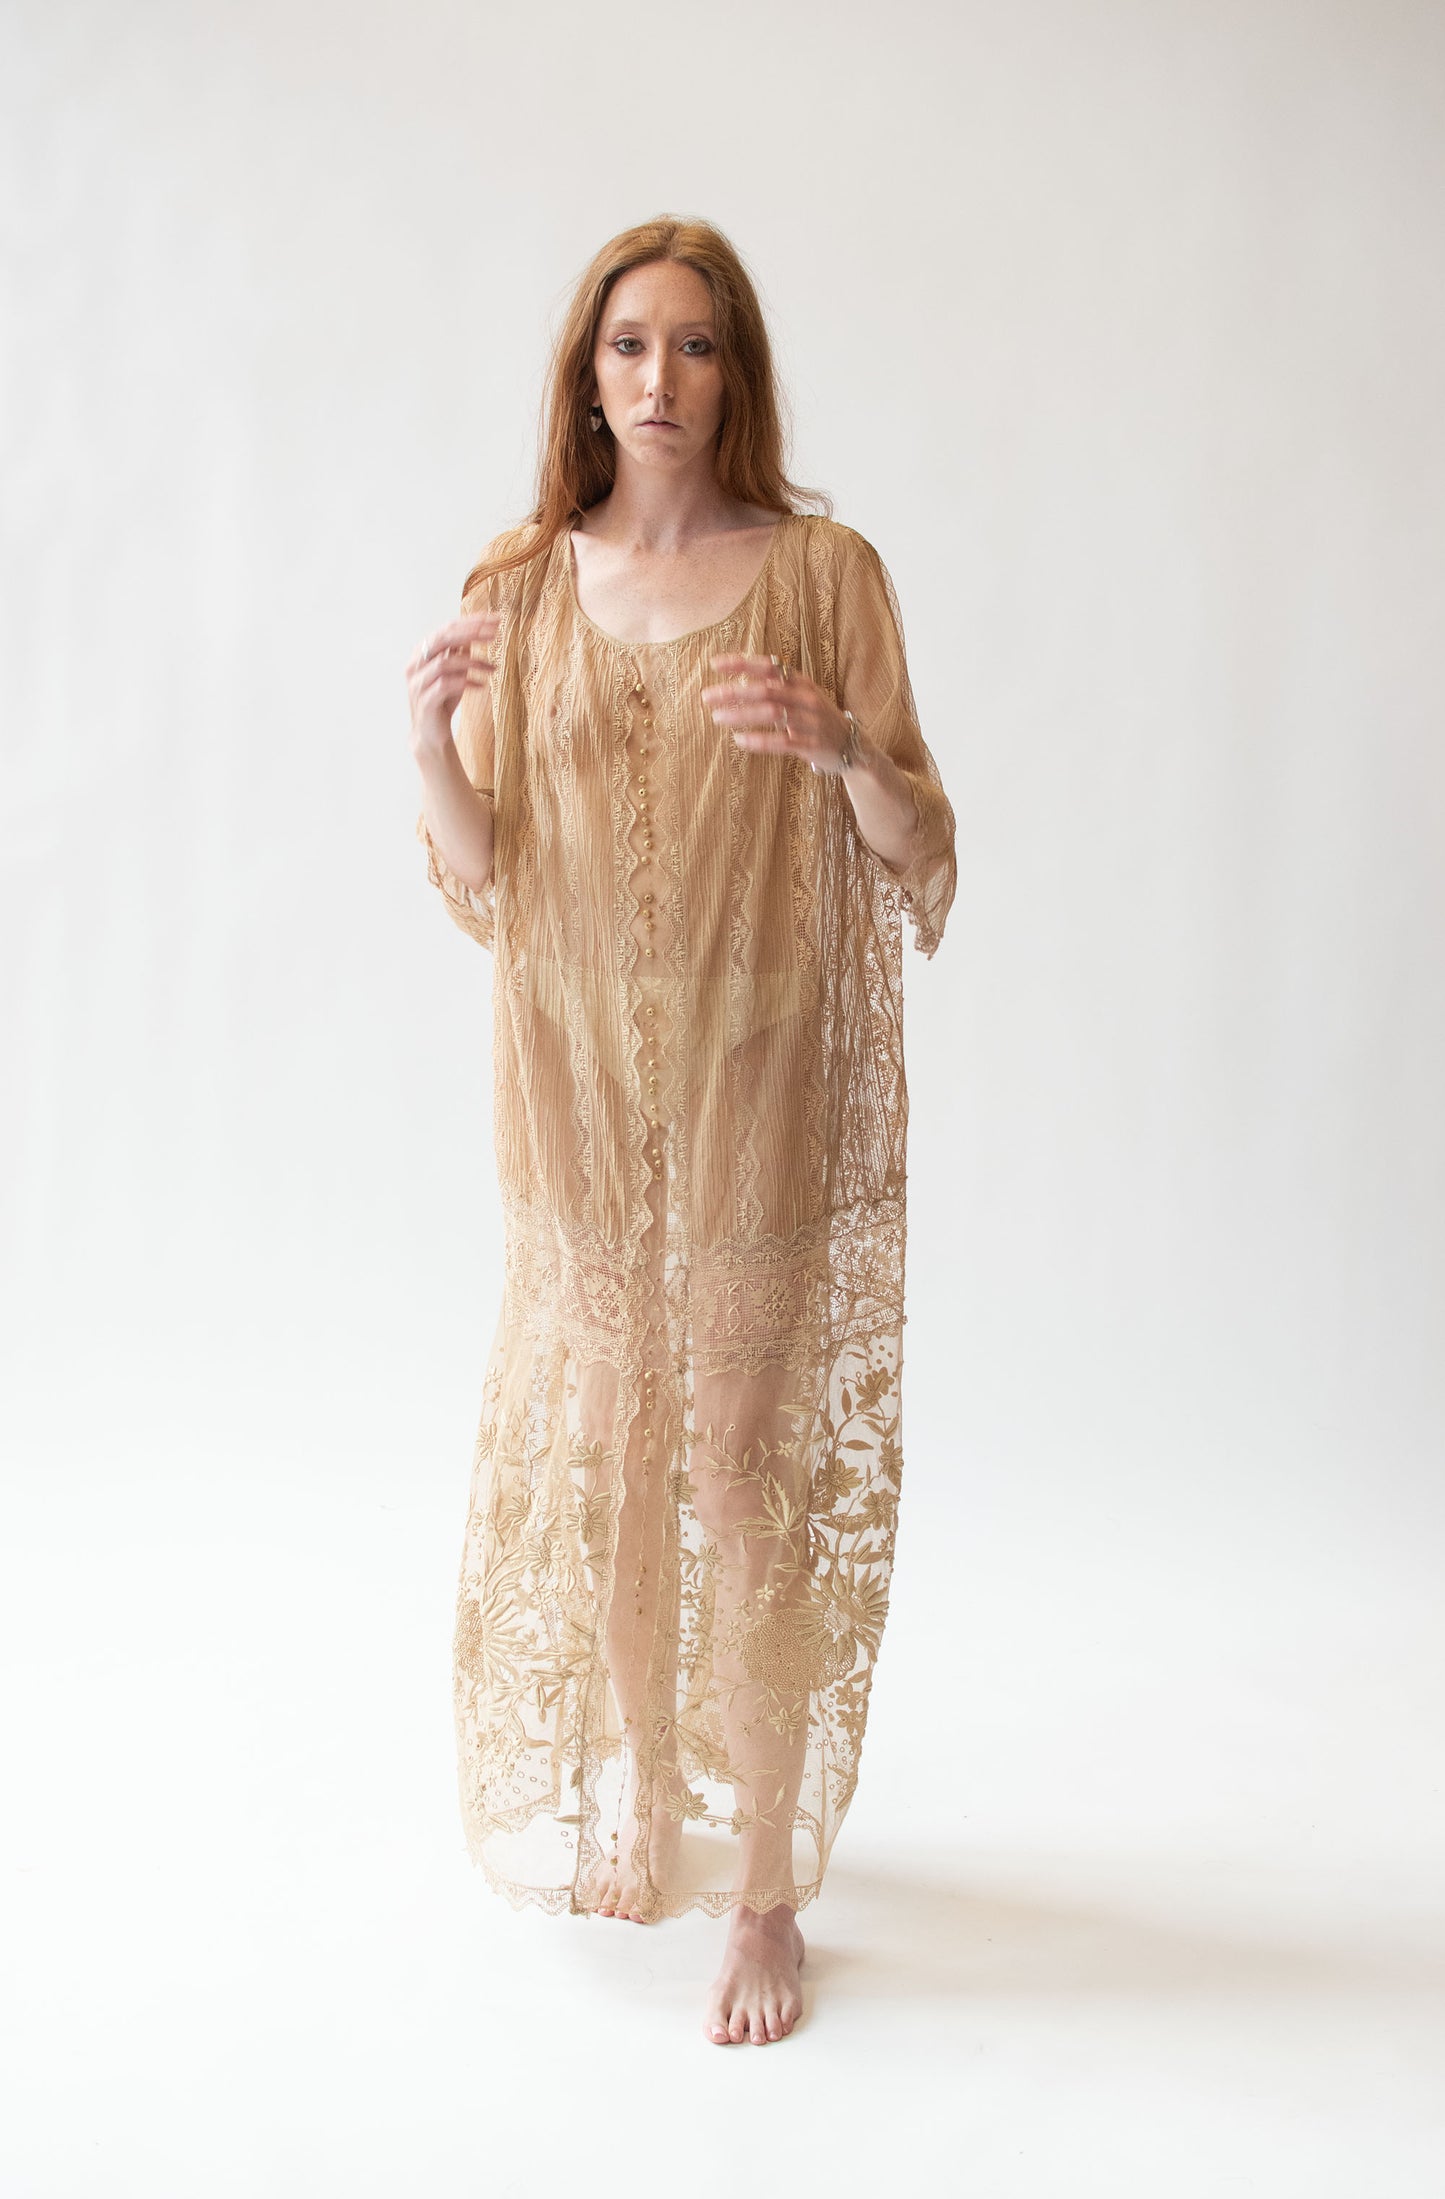 1910s Ecru Lace Dress